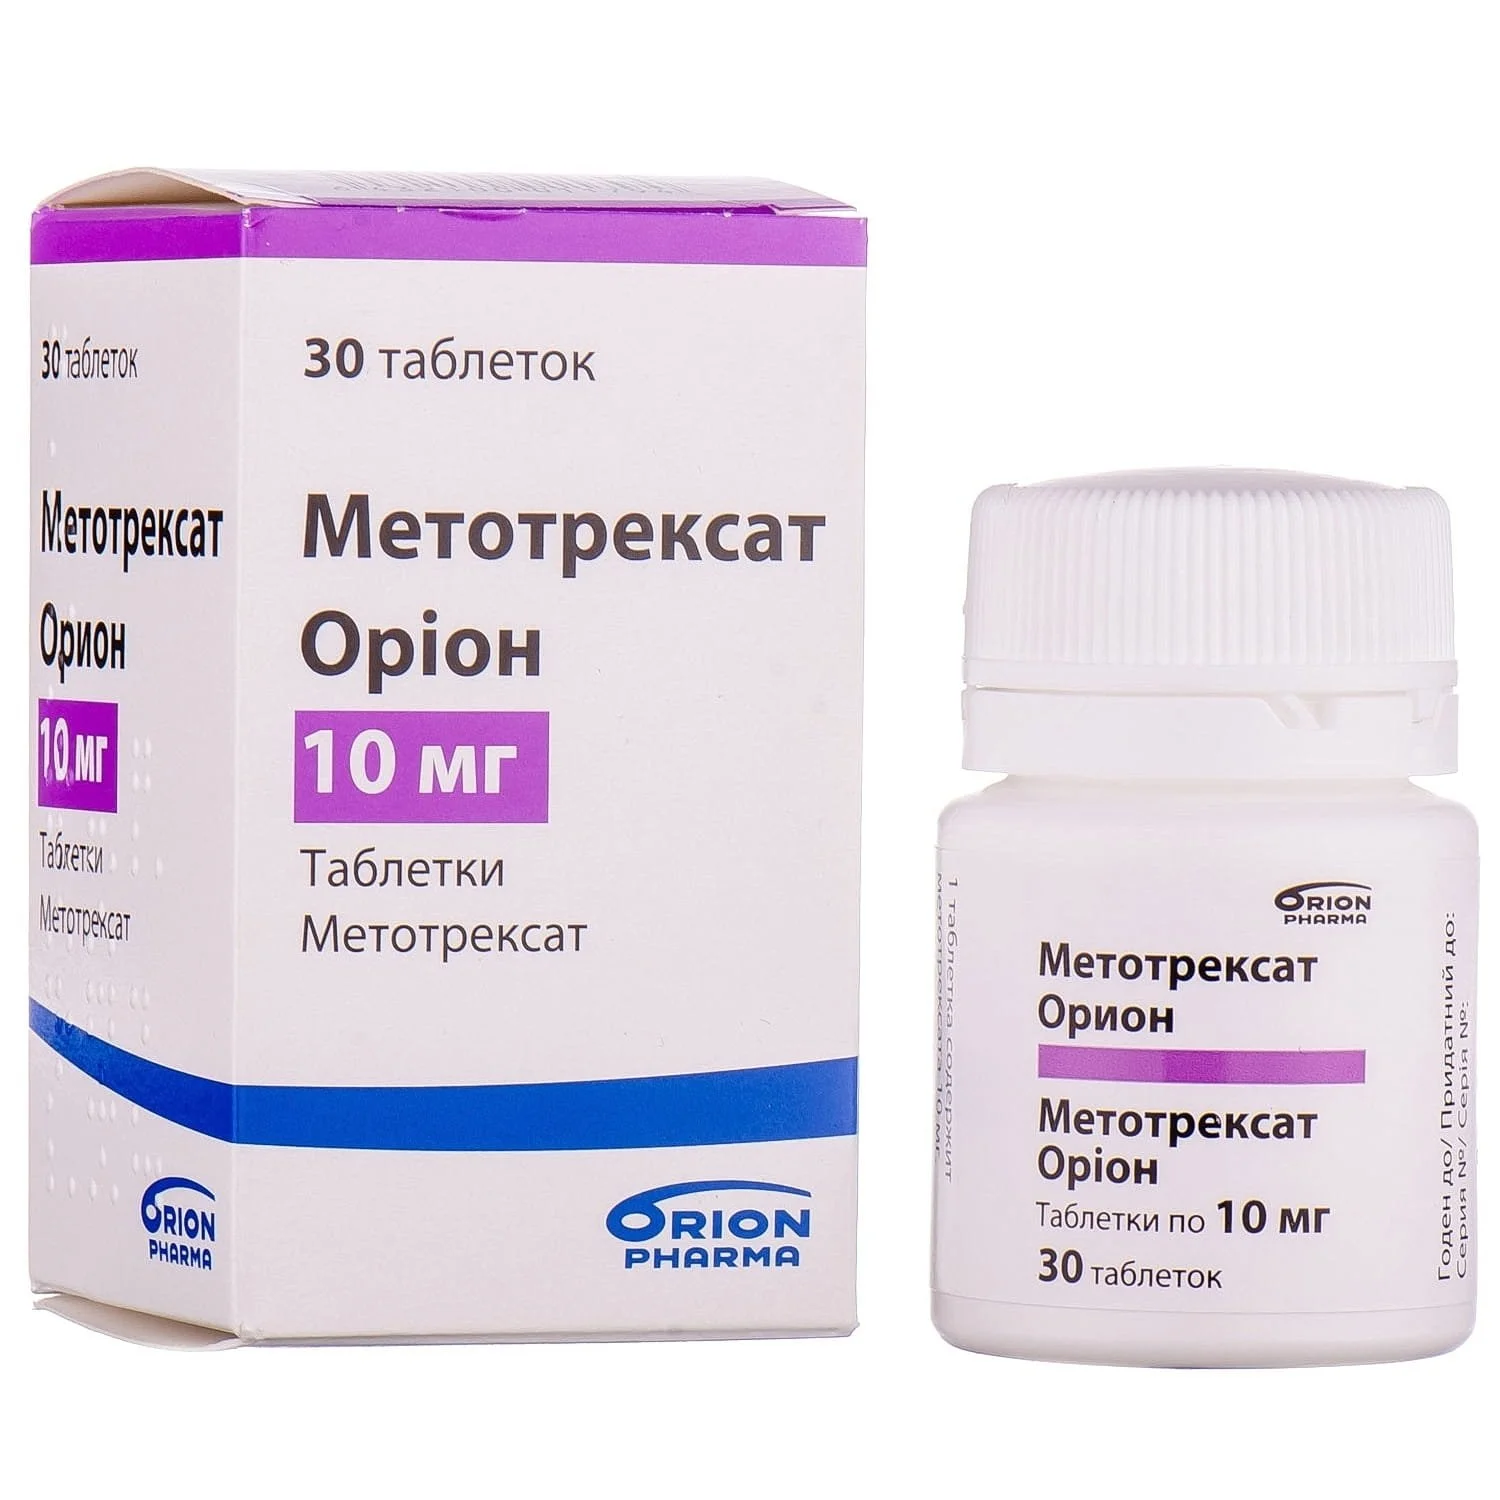 Метотрексат таблетки 2.5 мг. Метотрексат Орион 2.5 мг. Таблетки Метотрексат Орион 10 мг. Метотрексат 30 мг.